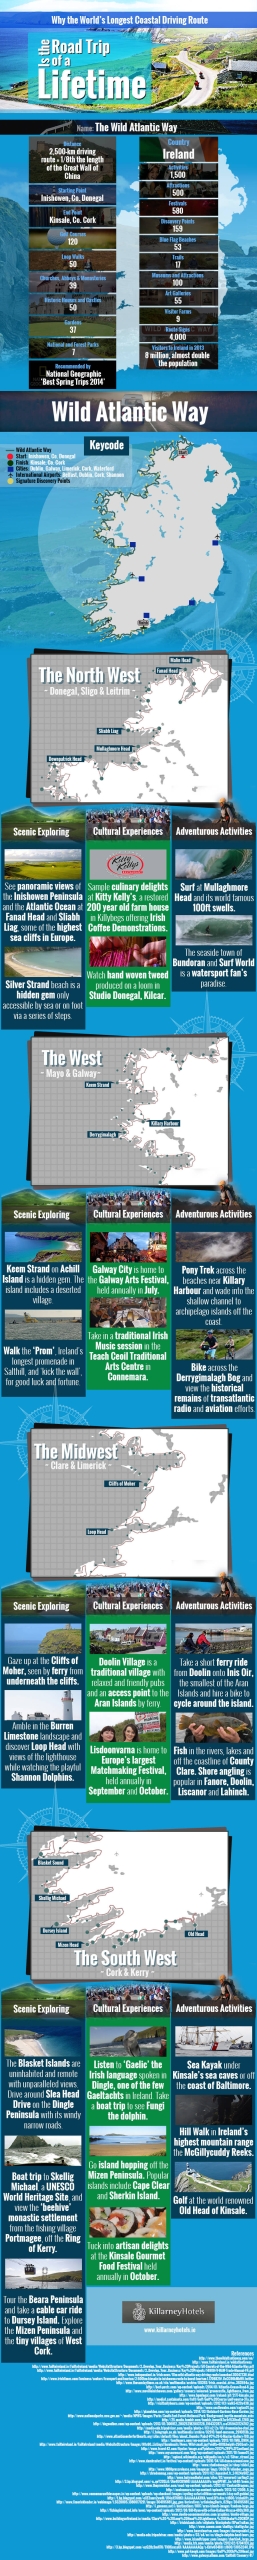 Infographic: Wild Atlantic Way